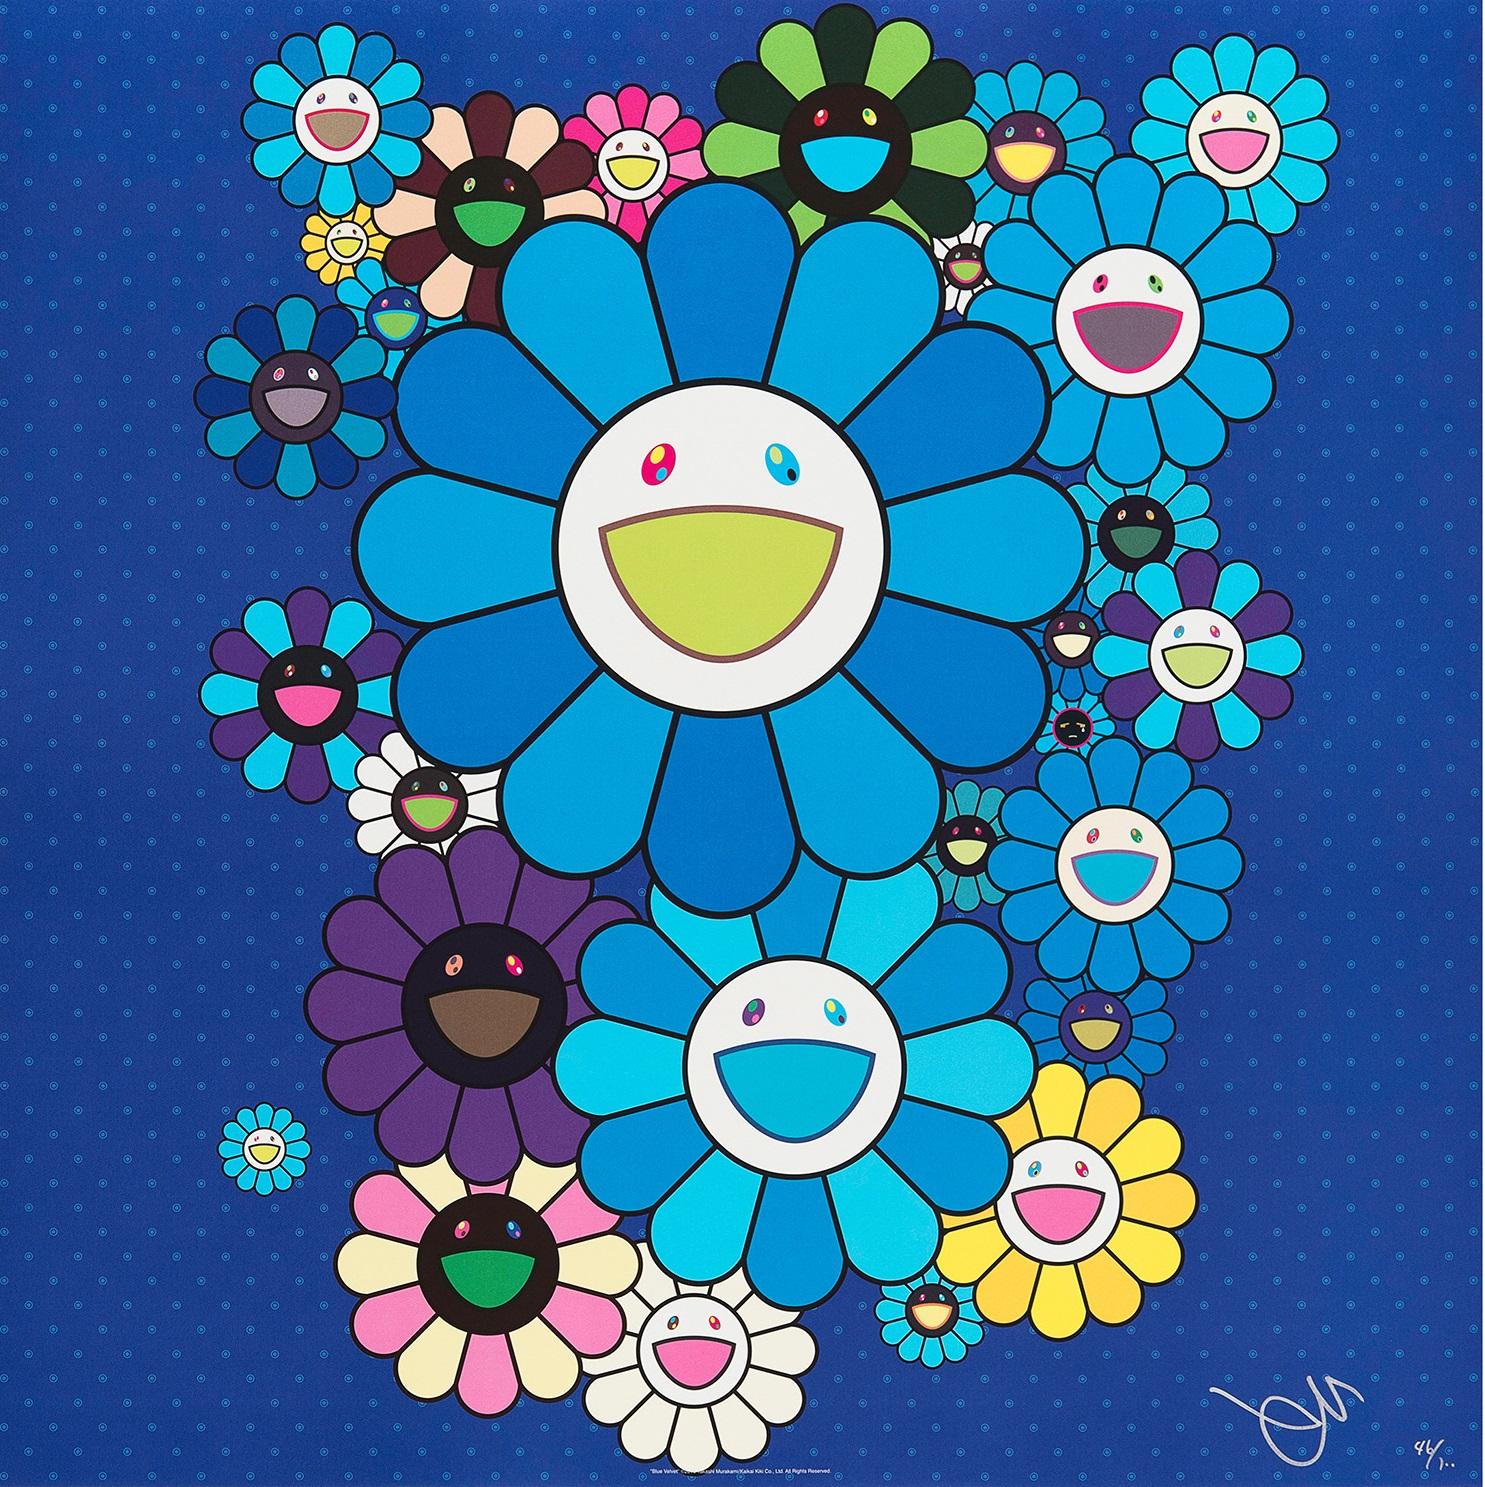 Blue Velvet, 2016 von Takashi Murakami
Offsetdruck, nummeriert und vom Künstler signiert
23 5/8 × 23 5/8 Zoll
60 × 60 cm
Ausgabe  218/300

Takashi Murakami ist vor allem für seine zeitgenössische Kombination aus bildender Kunst und Popkultur